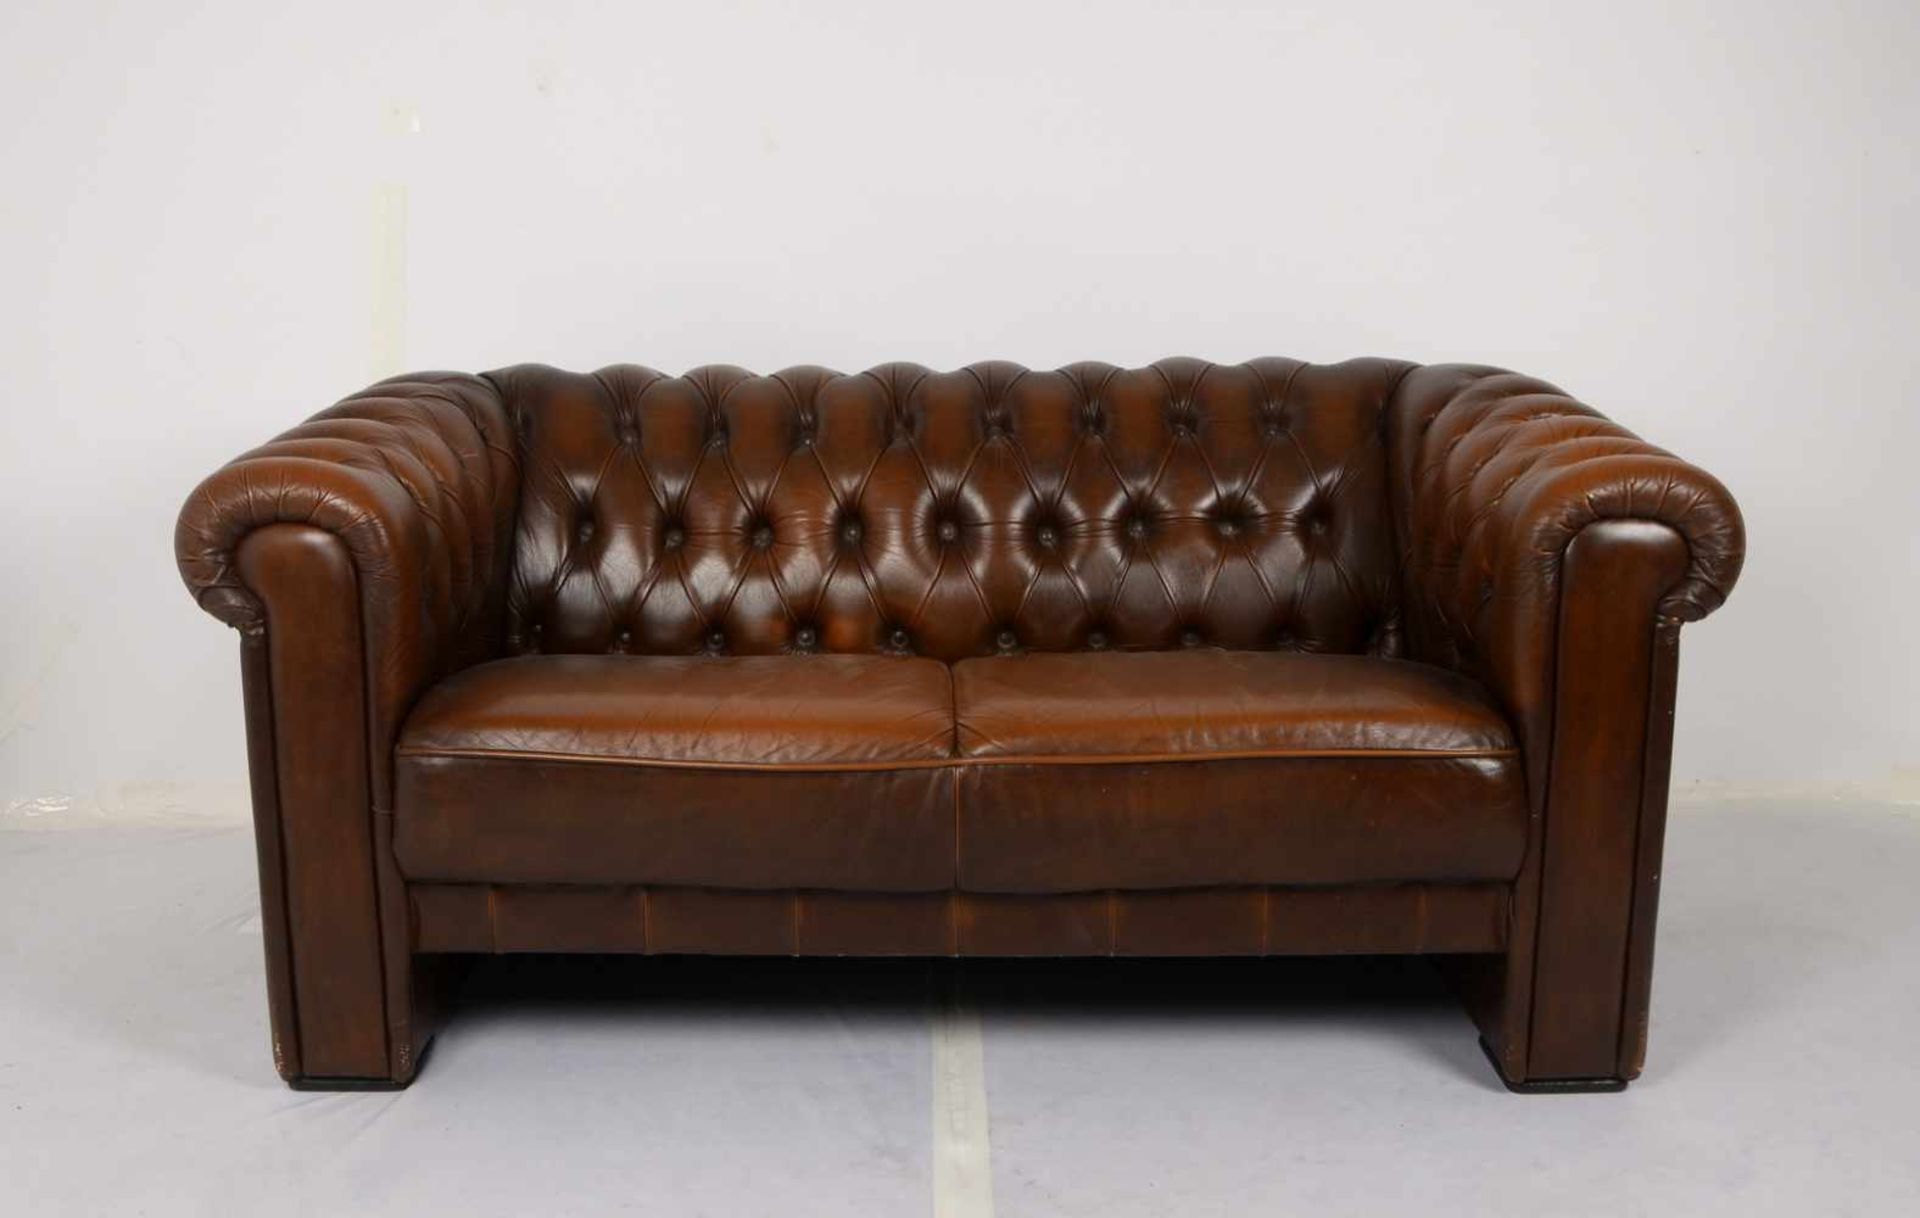 Chesterfield-Sofa/Zweisitzer, Polsterung aus braunem Leder/geknüpft, in gutem Erhaltungszustand;